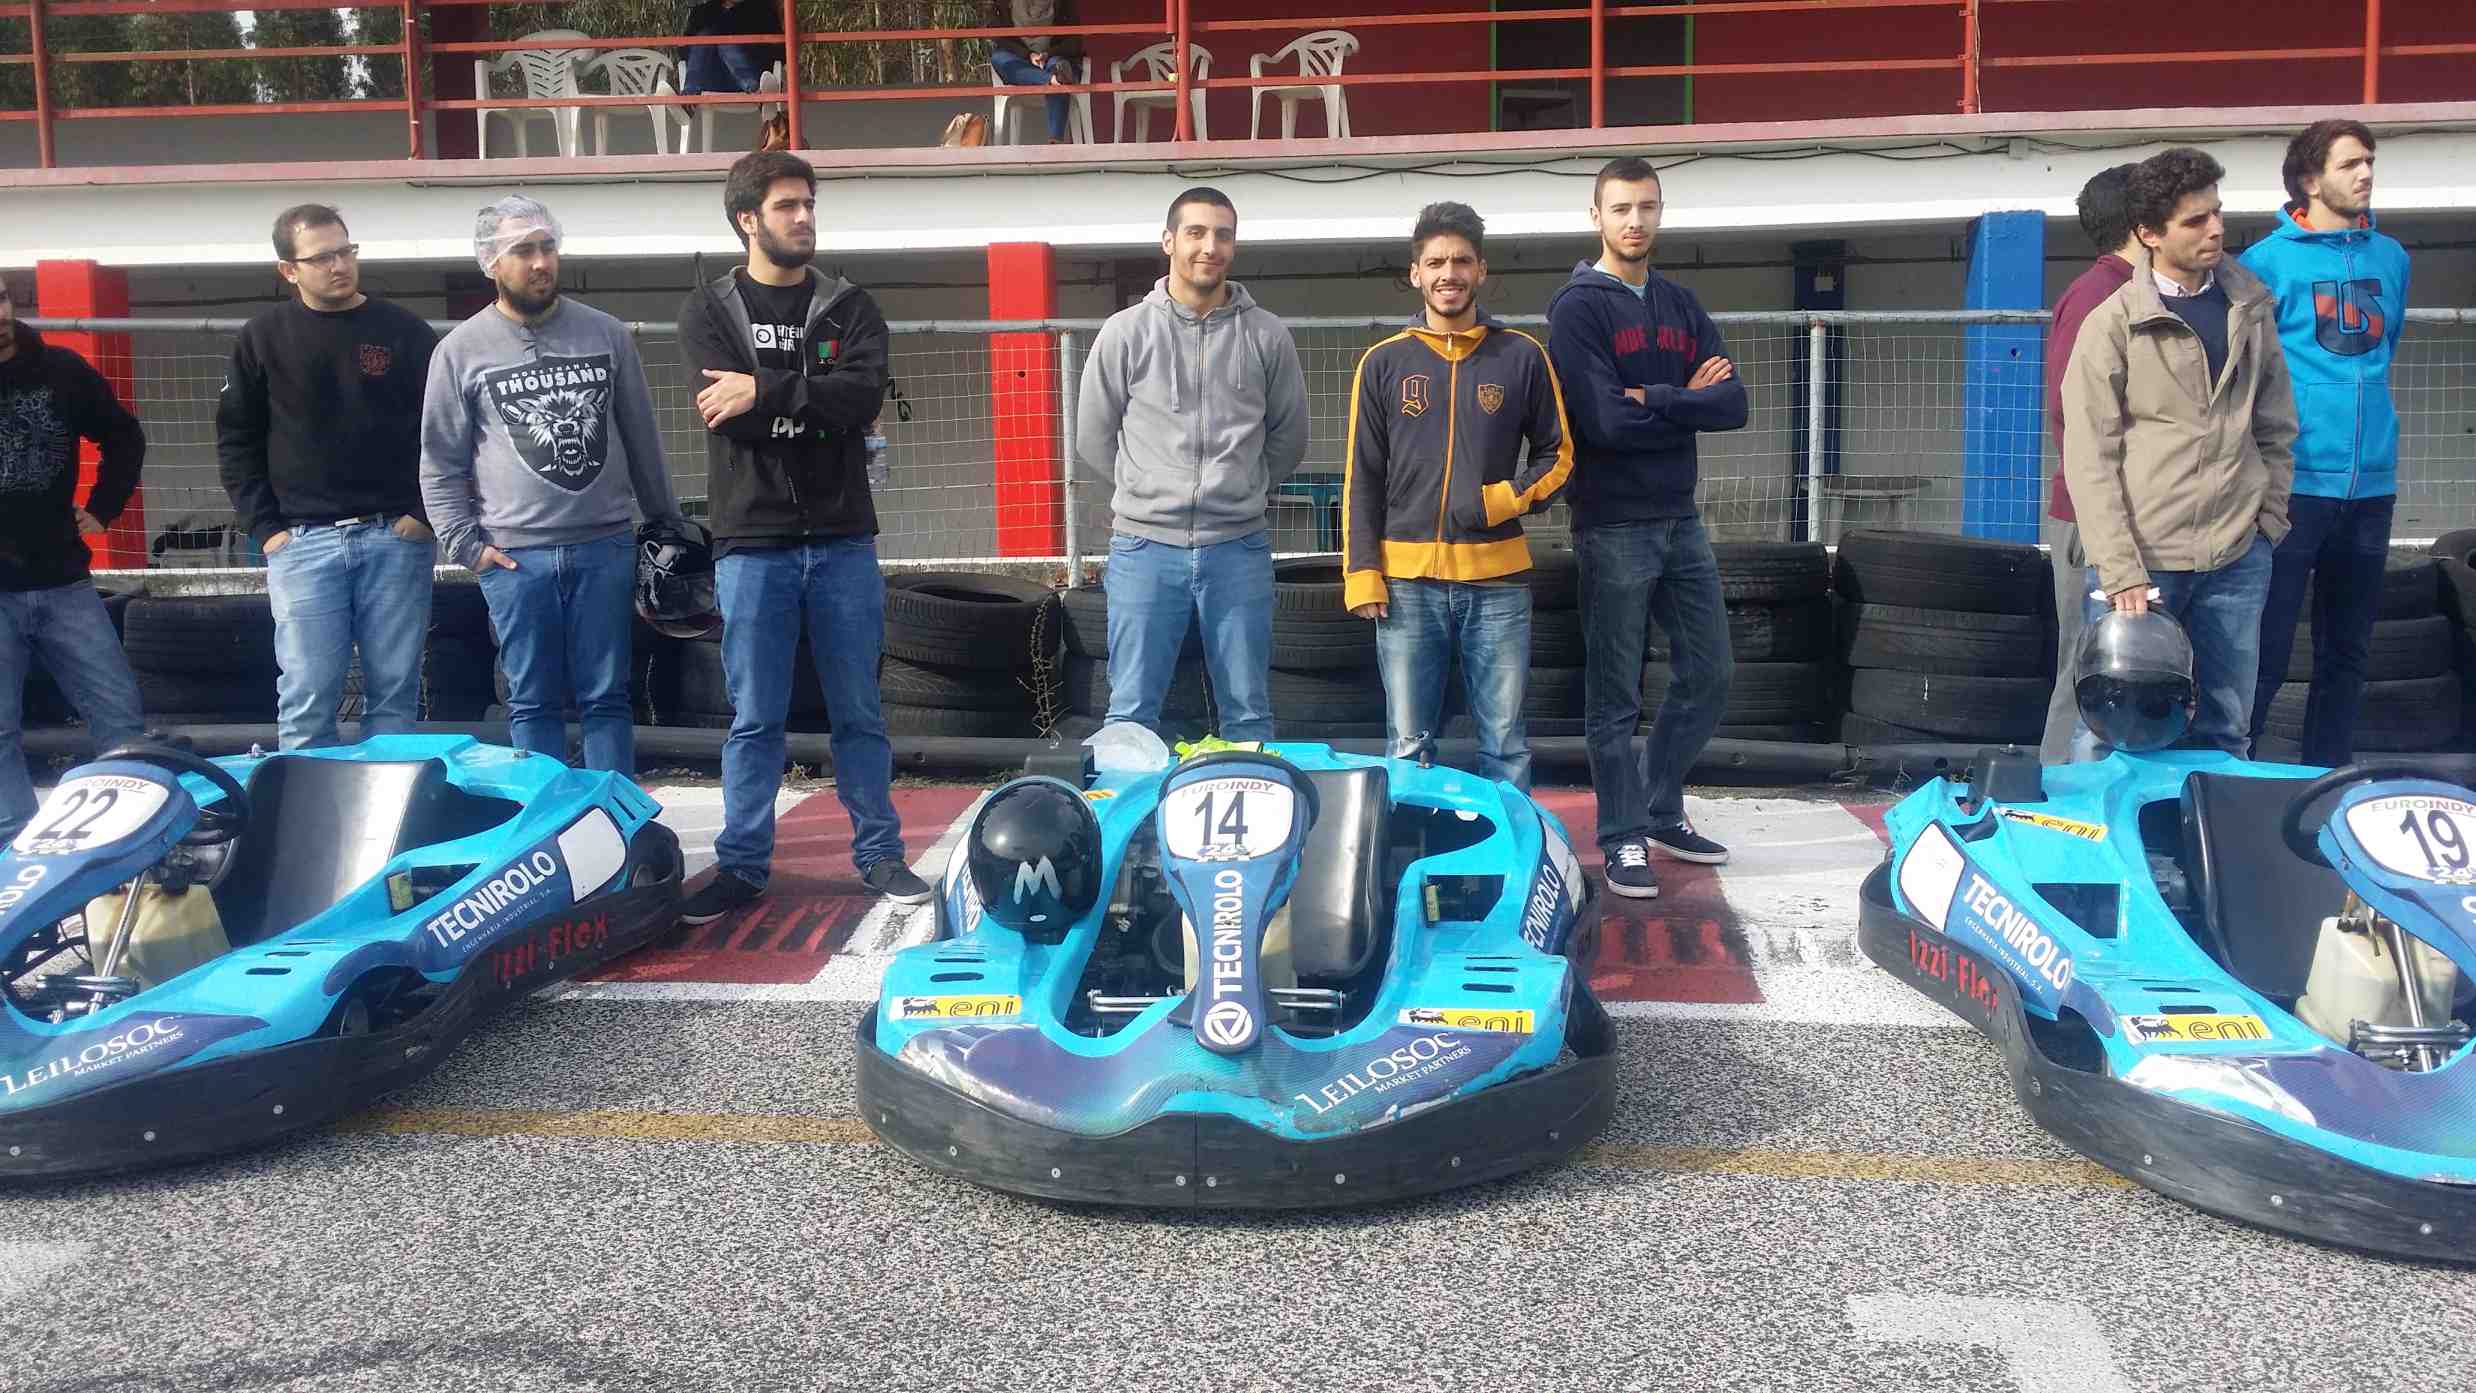 VIII Troféu de Karting do Politécnico de Leiria41